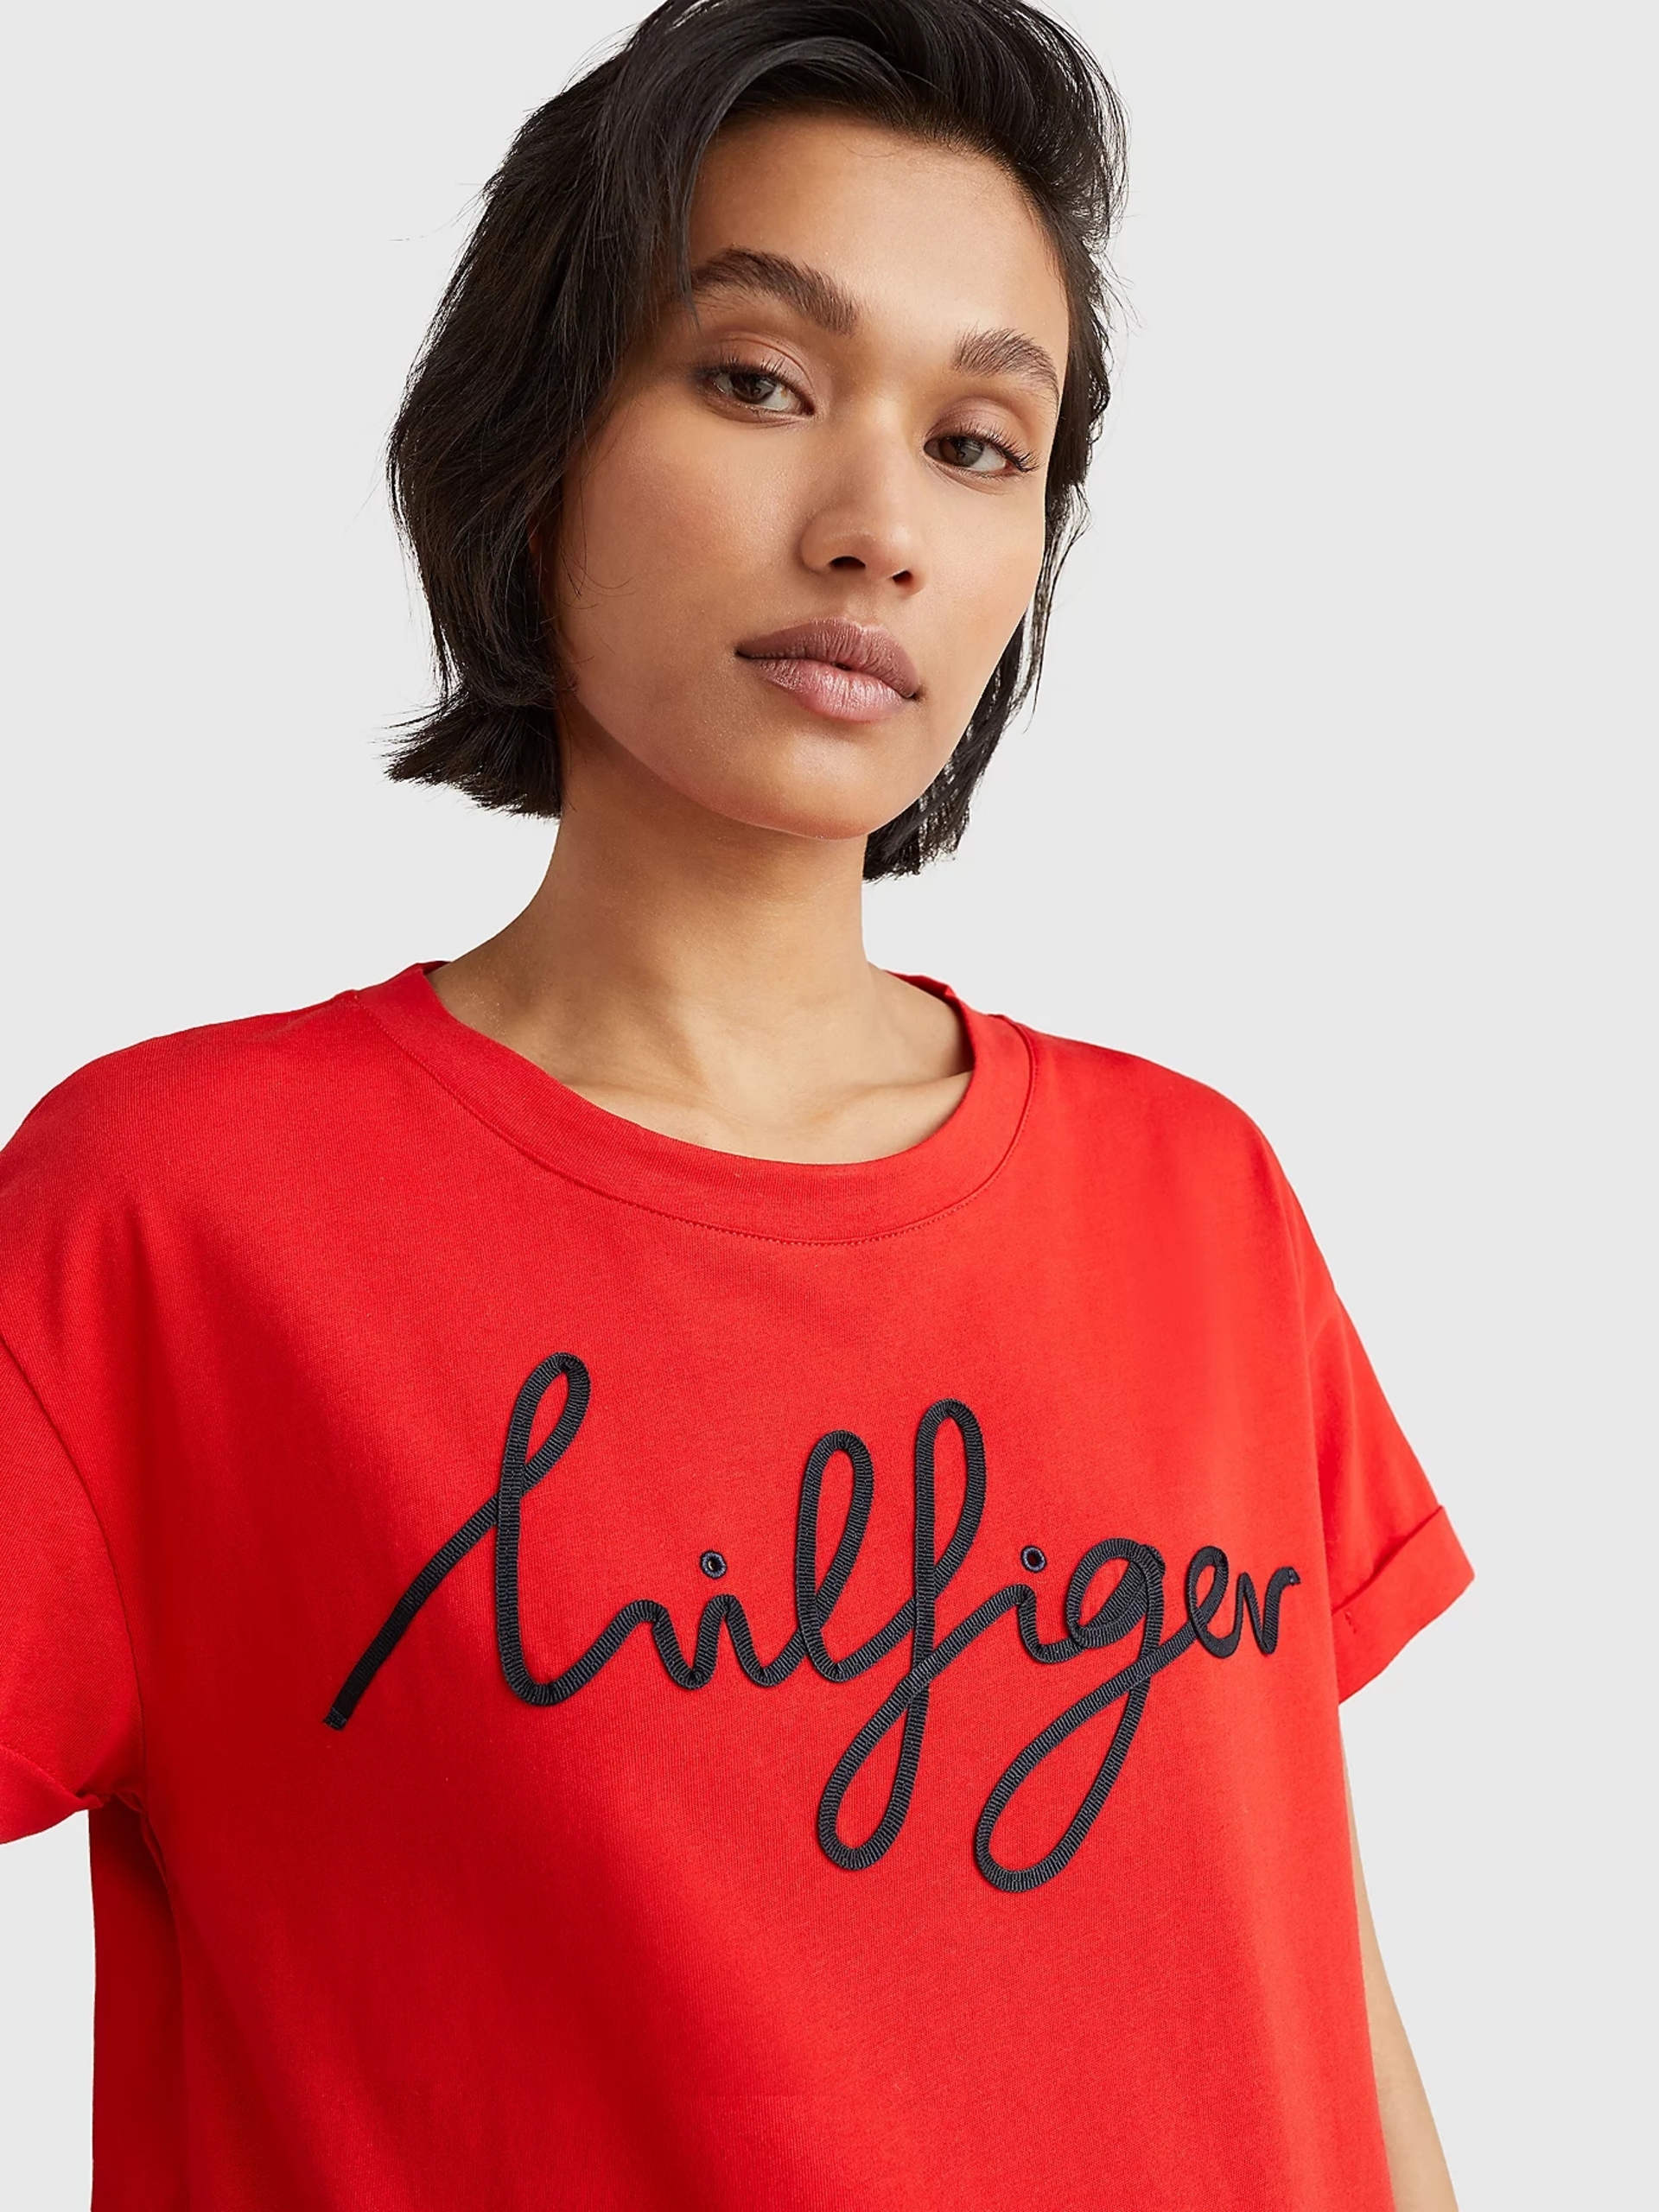 Tommy Hilfiger dámské červené tričko - XS (SNE)